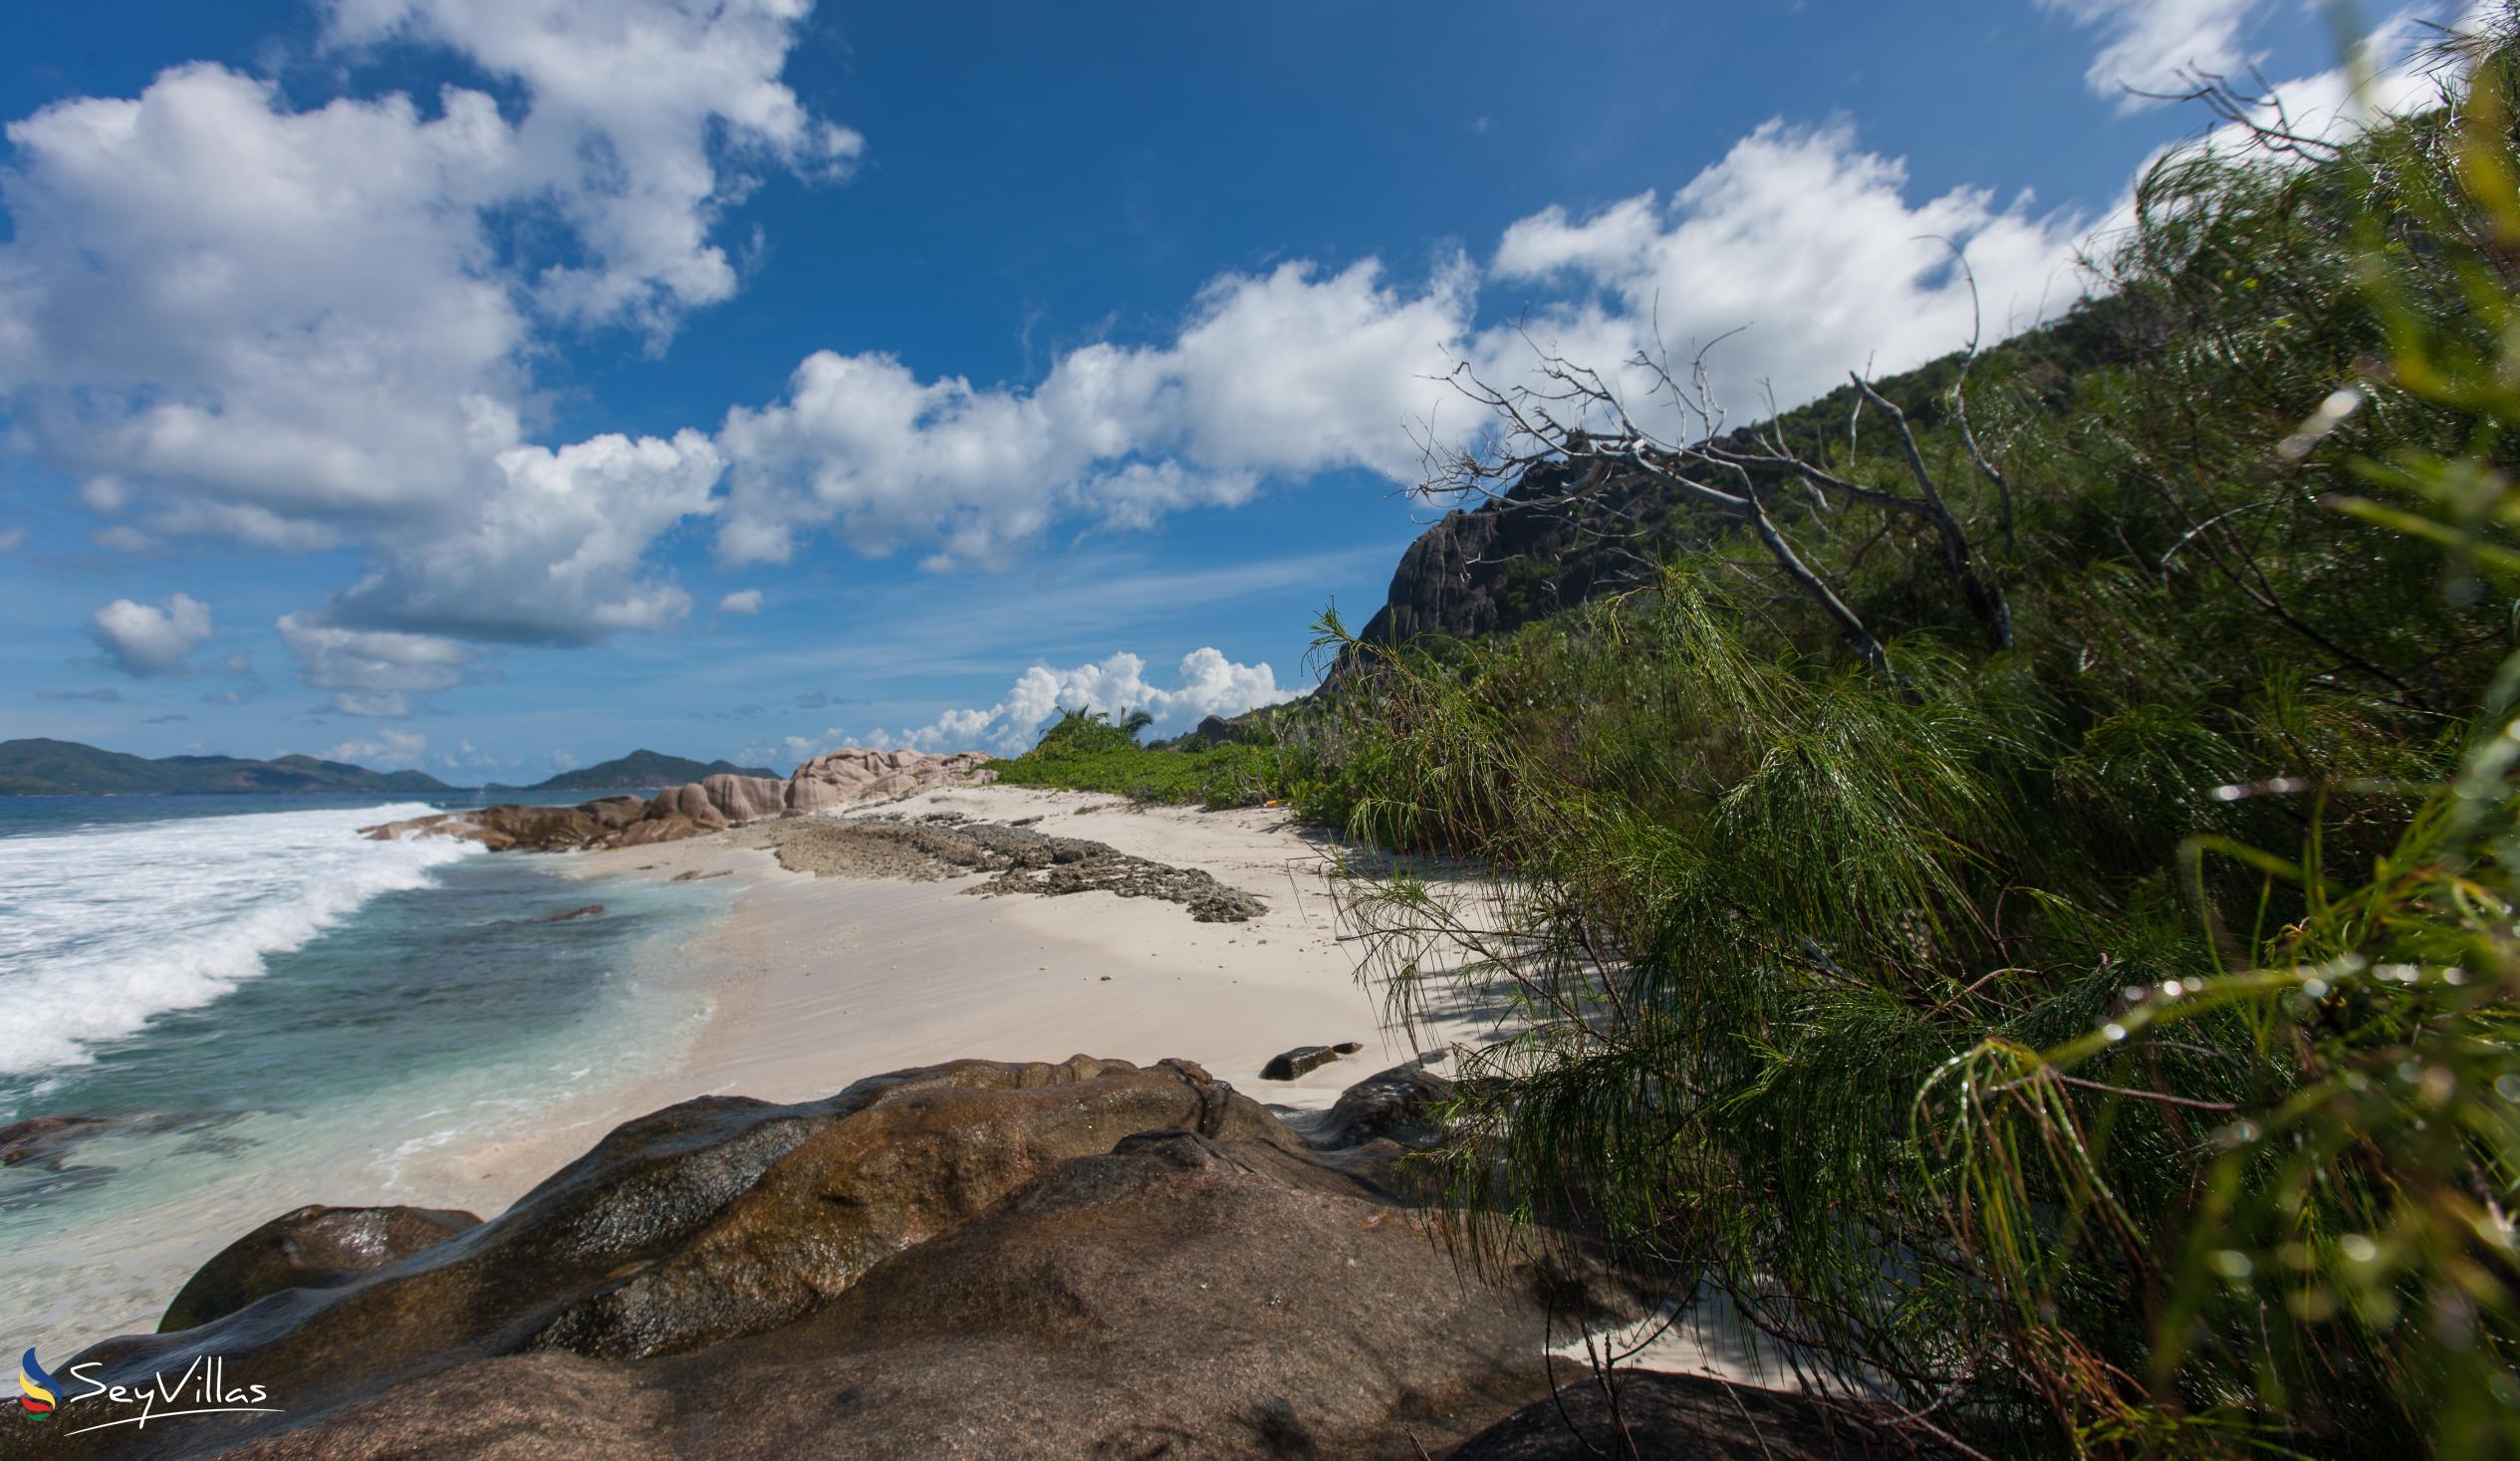 Photo 18: Anse aux Cèdres - La Digue (Seychelles)